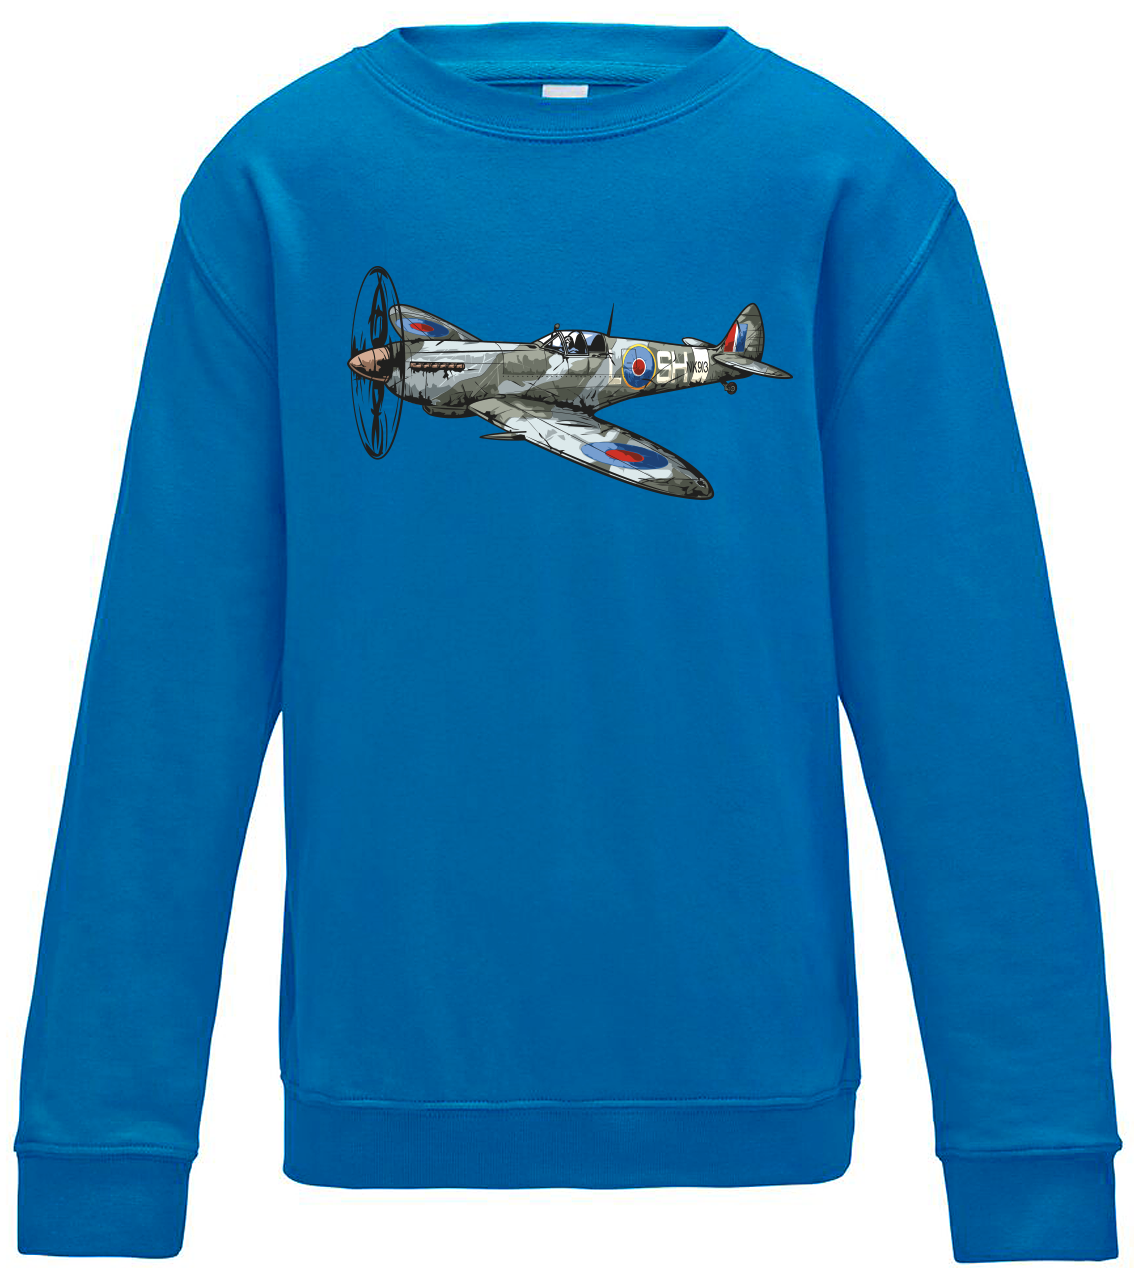 Dětská mikina s letadlem - Spitfire Velikost: 5/6 (110/116), Barva: Modrá